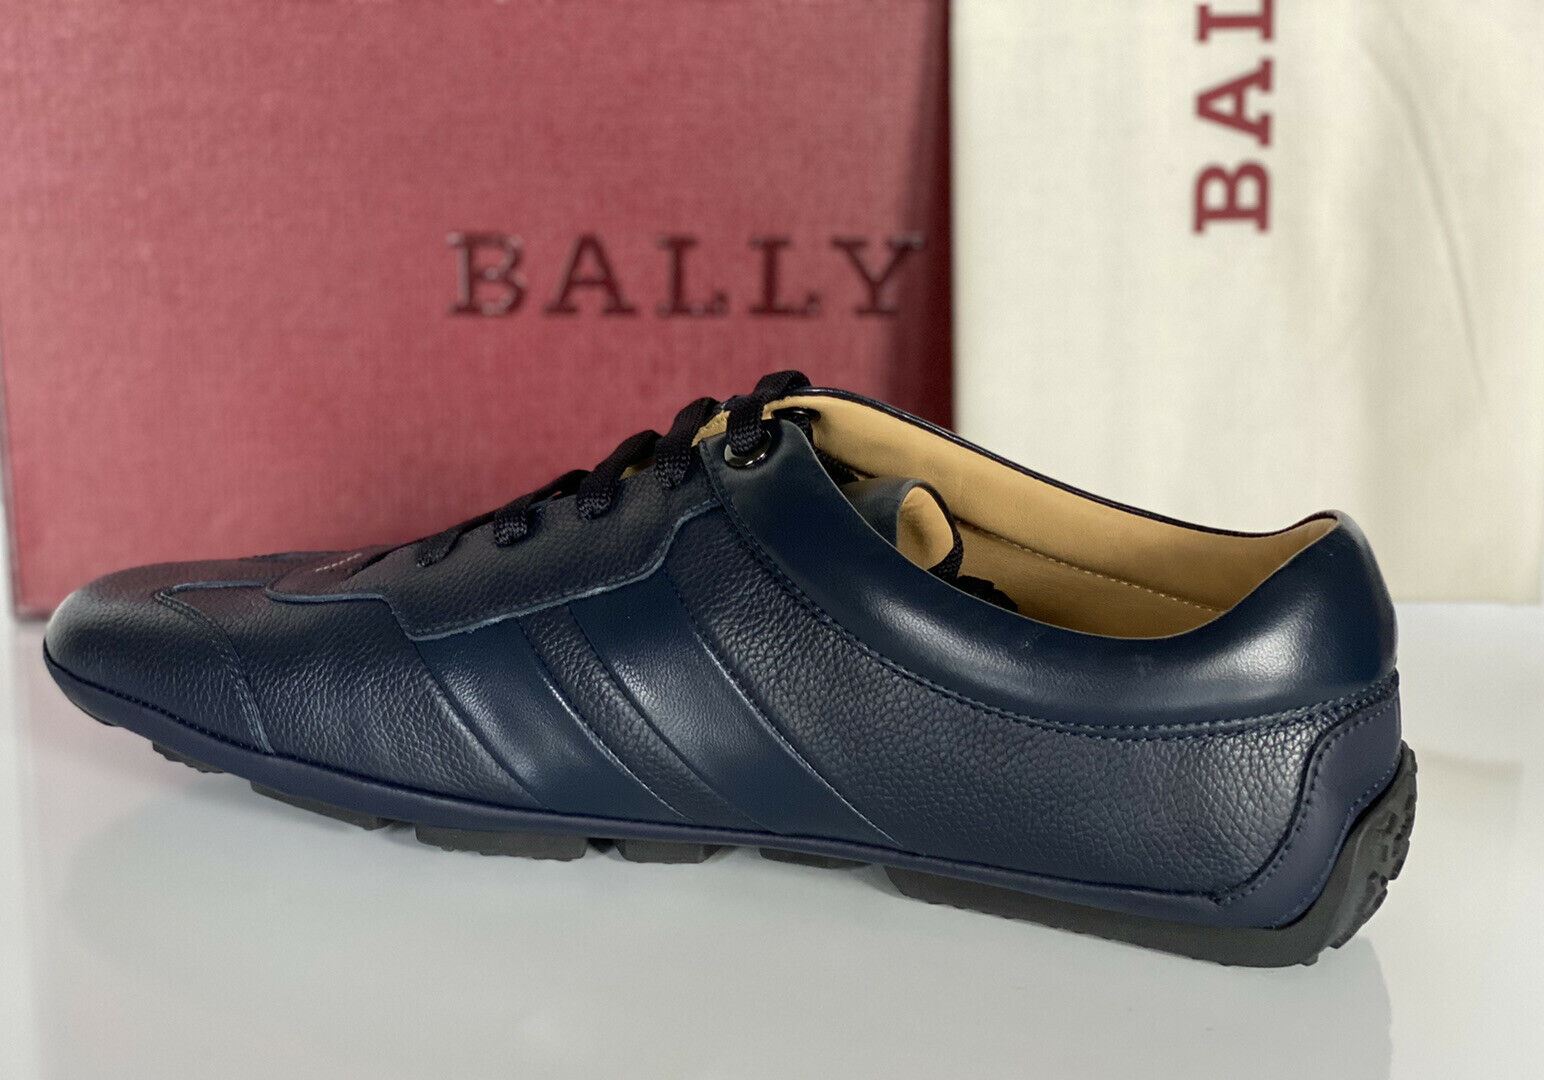 NIB Bally Primer Herren-Turnschuhe aus Rindsleder mit Prägung, Blau, 10 US 6234863, Italien 